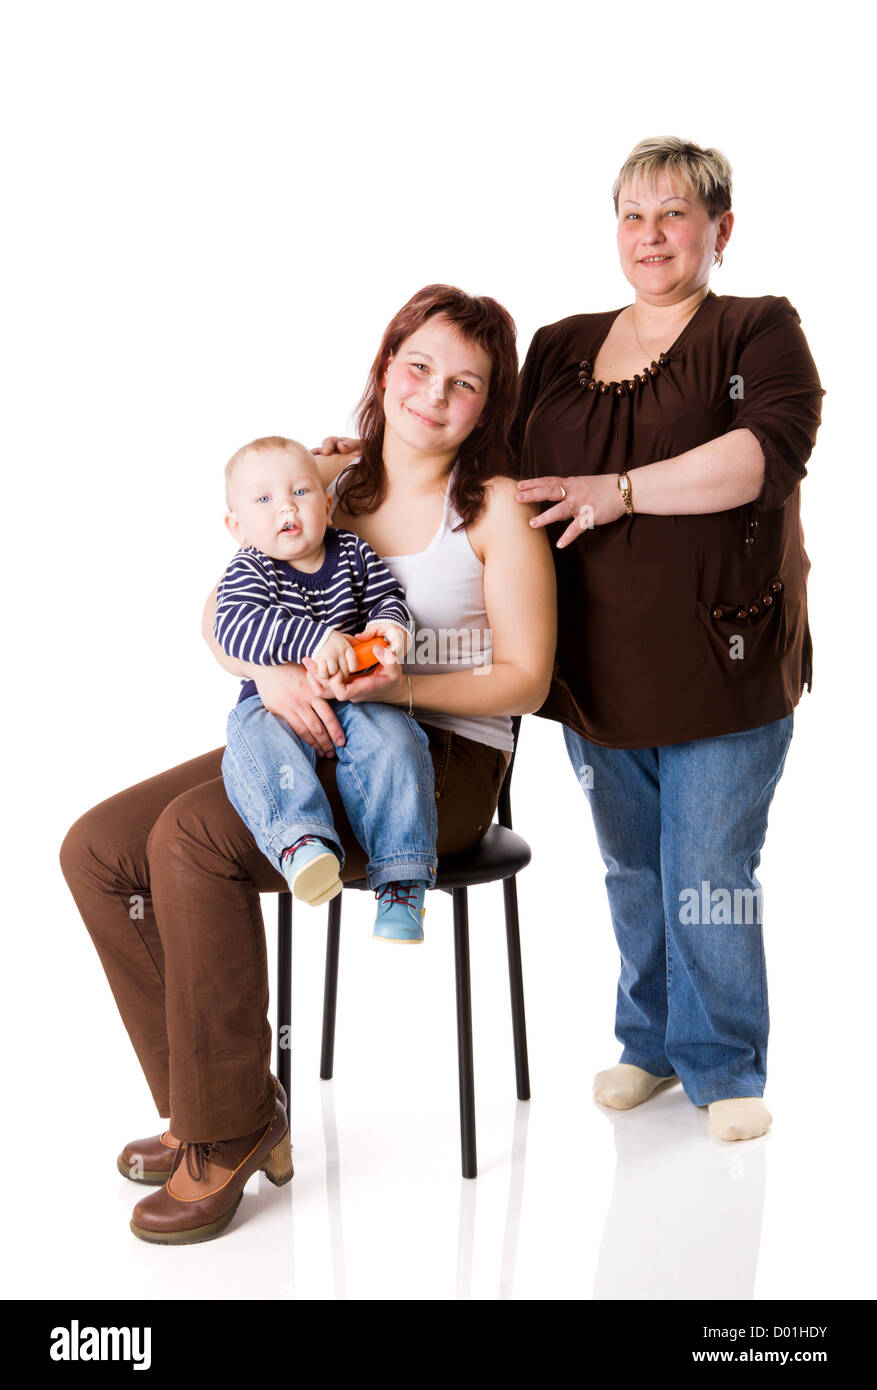 Famille de trois générations - garçon, mère et grand-mère isolated on white Banque D'Images